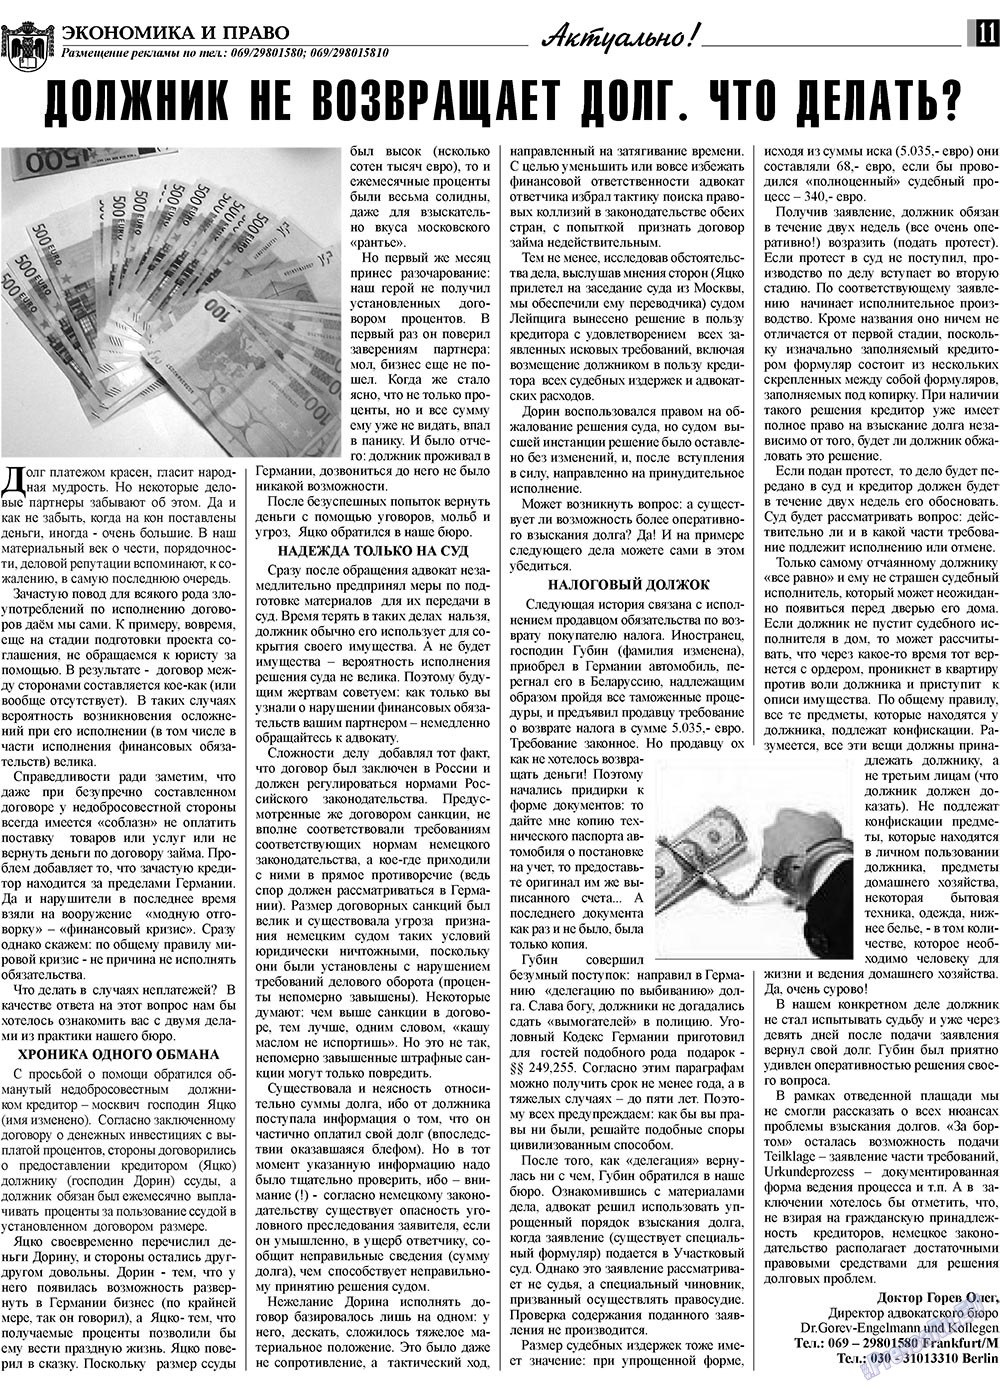 Экономика и право, газета. 2009 №1 стр.11